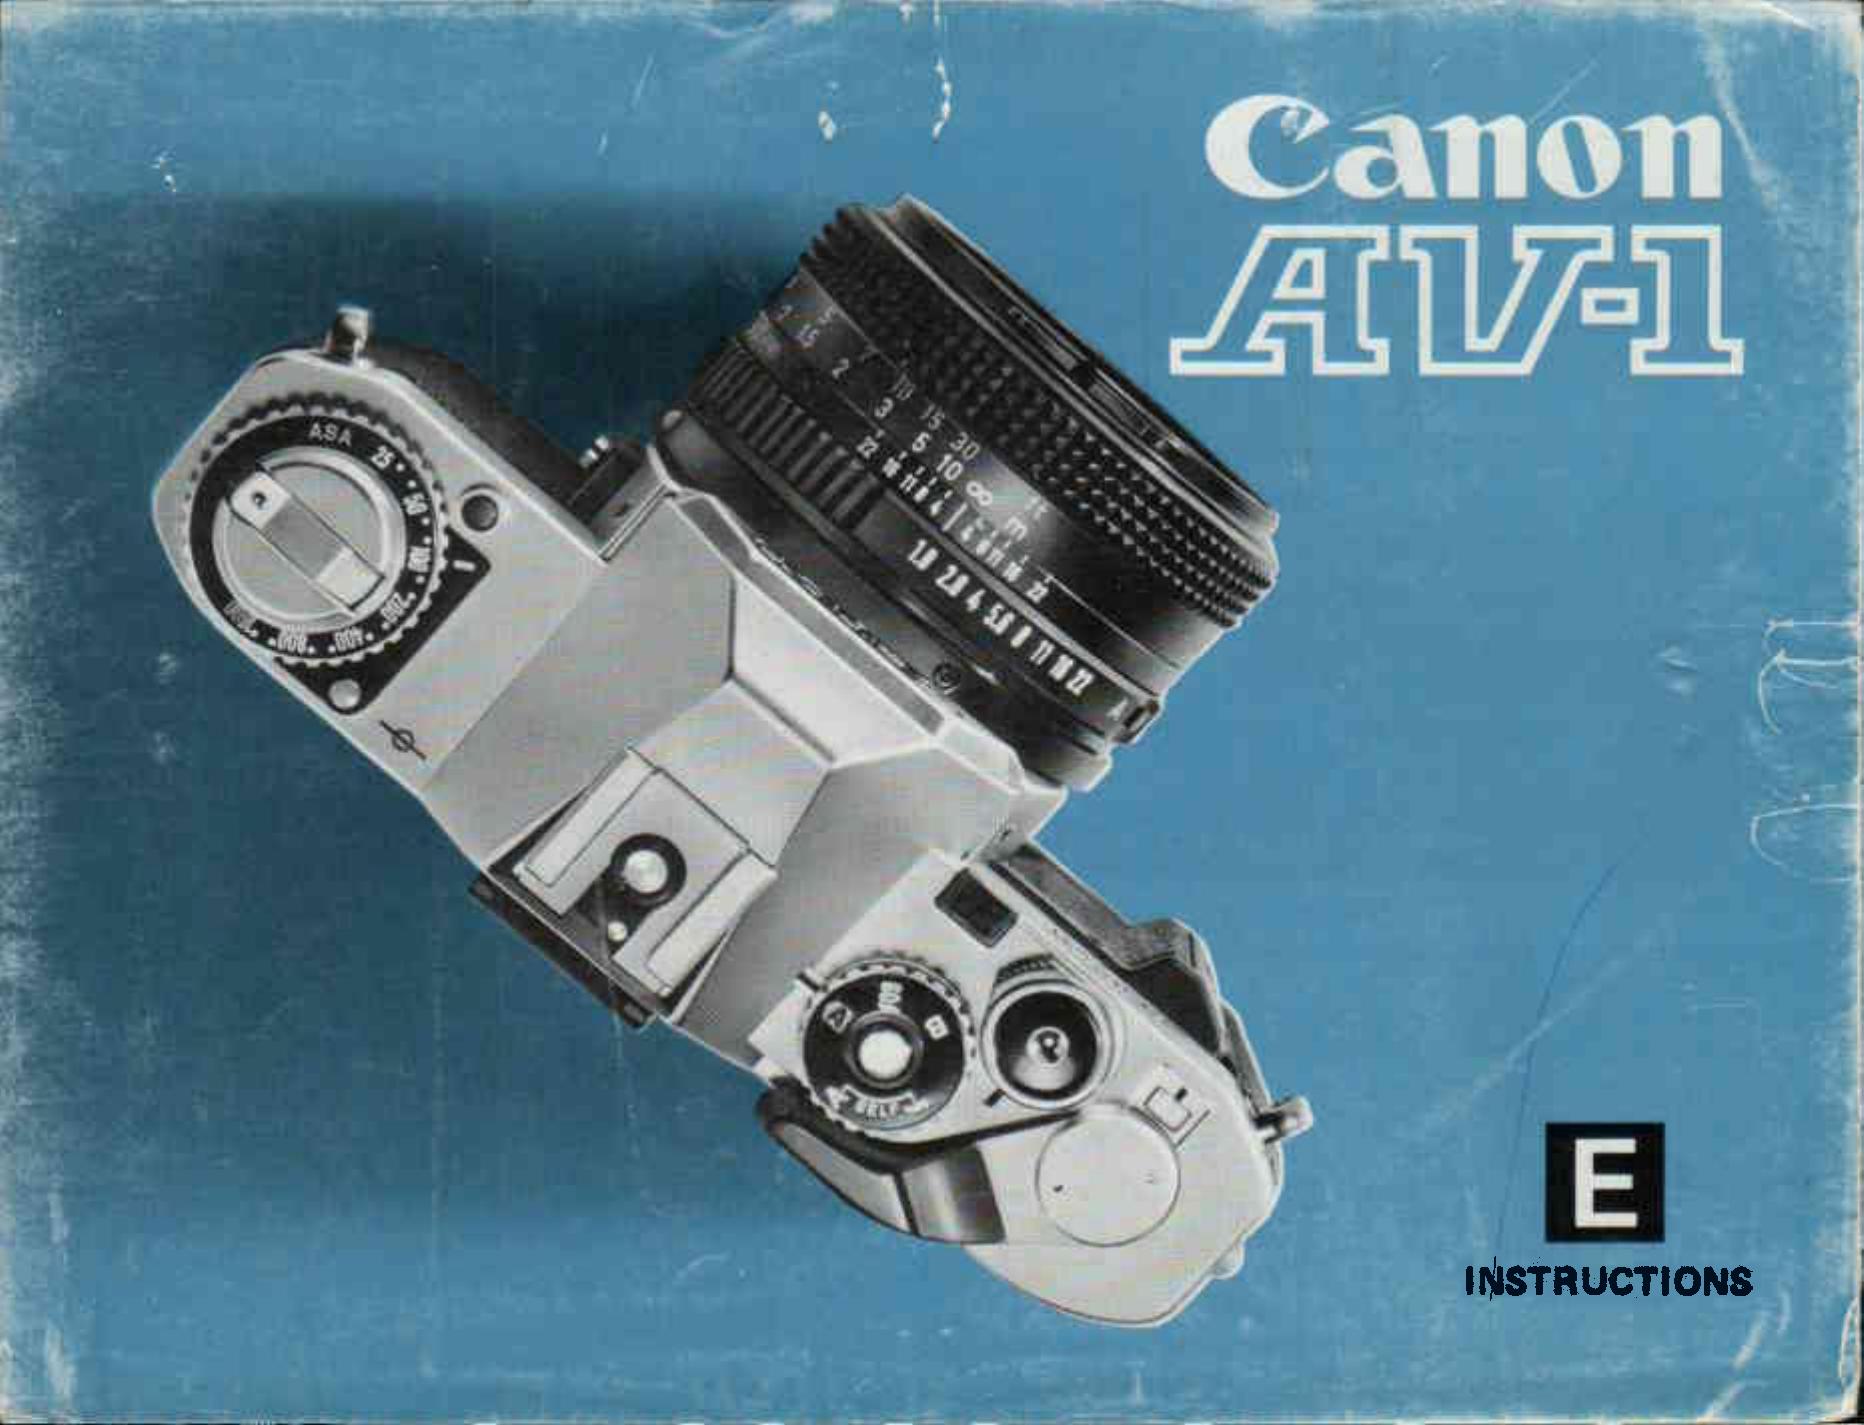 Canon AV 1 Film Camera User Manual